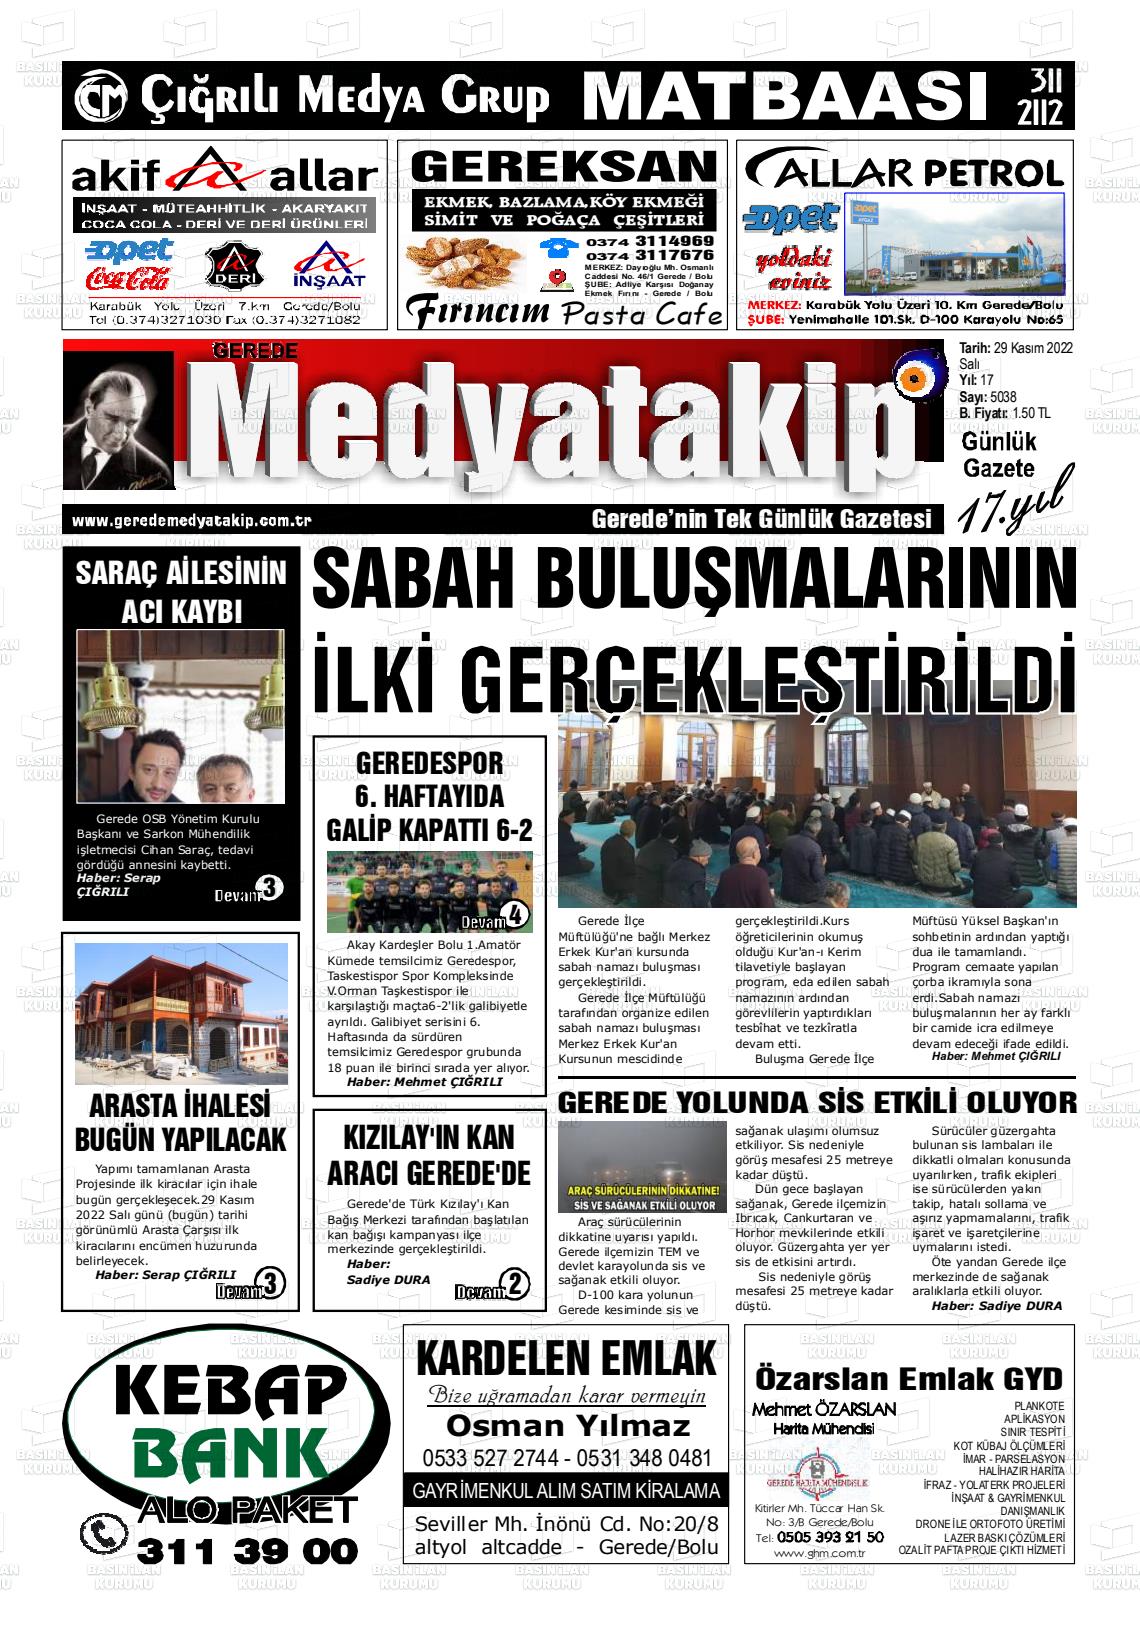 29 Kasım 2022 Gerede Medya Takip Gazete Manşeti